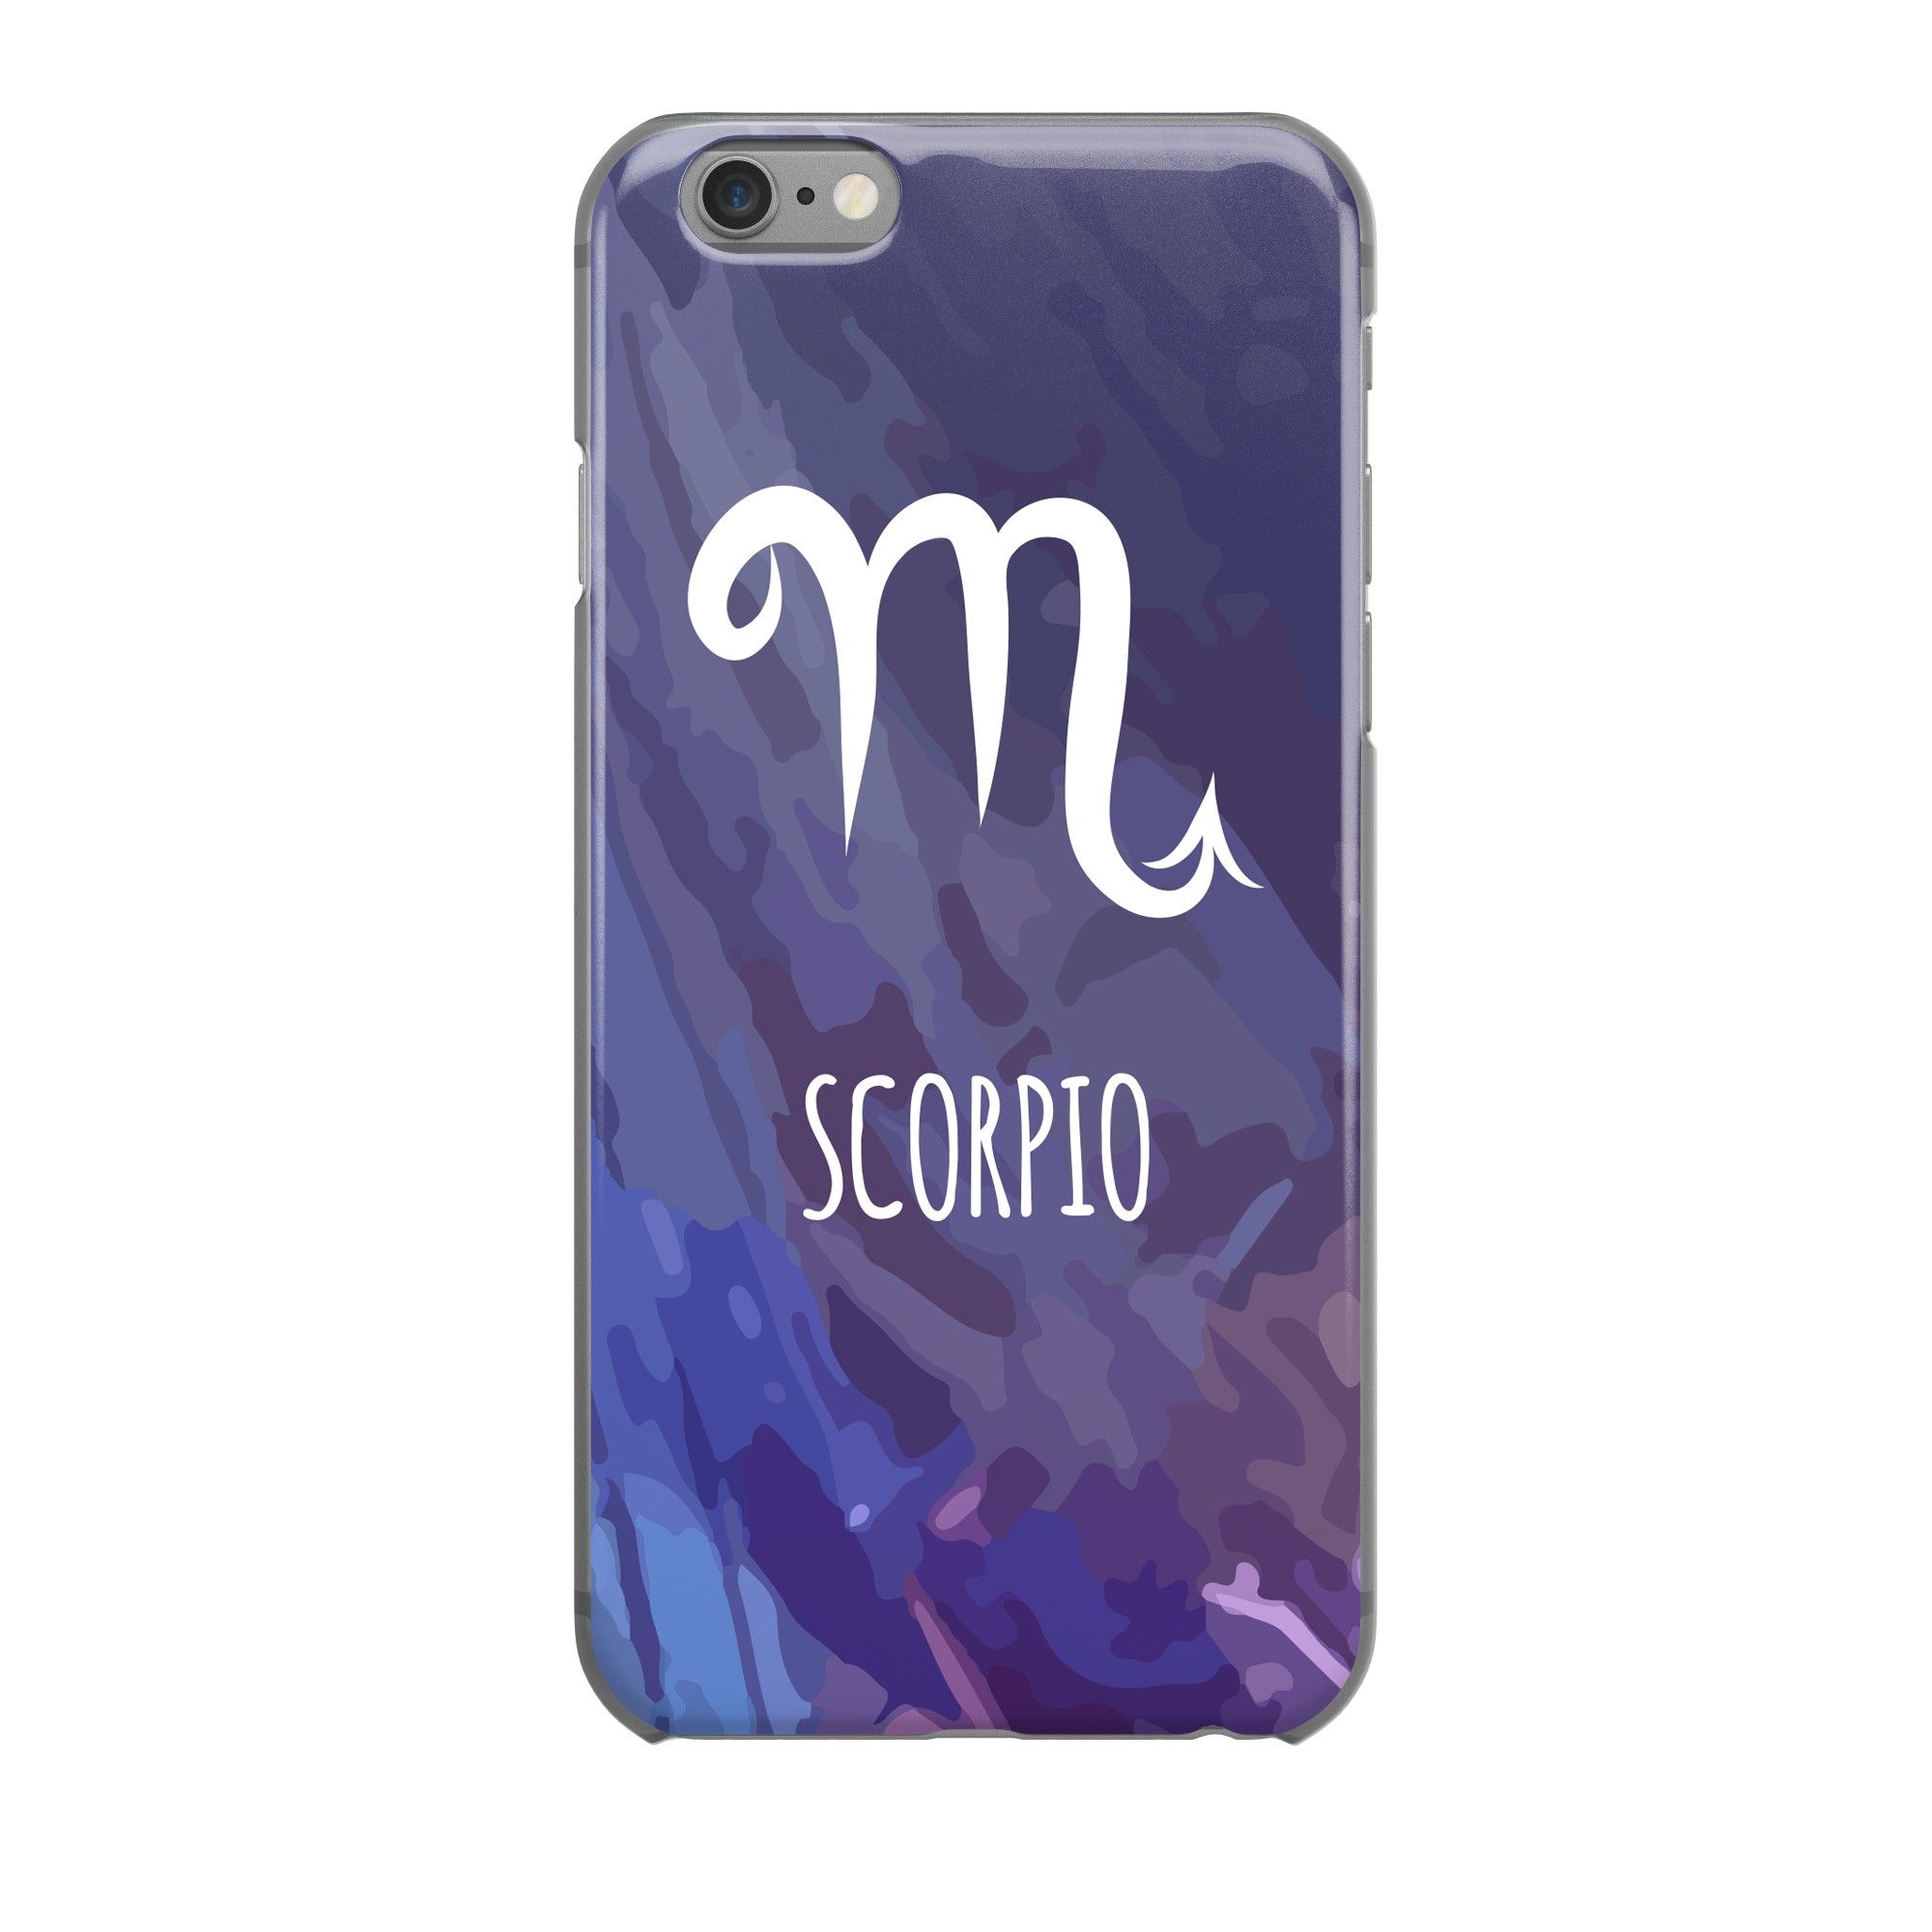  Scorpio - Iphone 6 